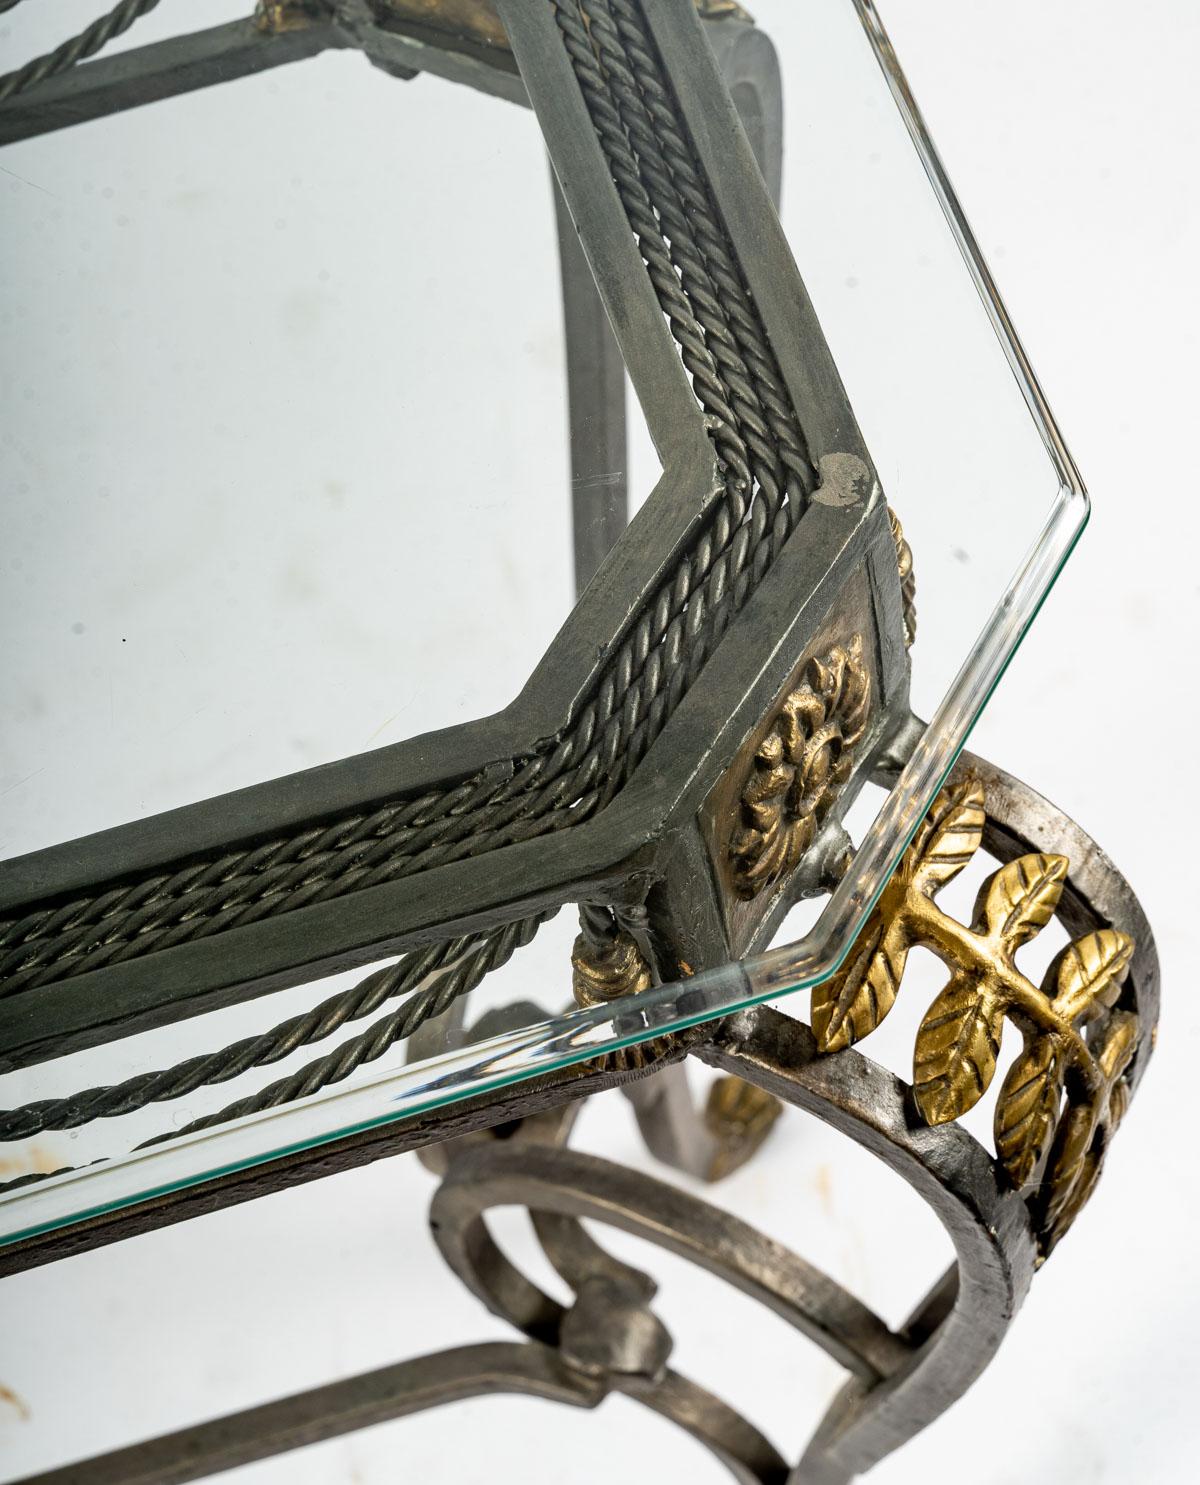 Console, Louis XV style. Wrought iron, glass top, 20th century.
Measures: h: 75 cm, l: 110 cm, d: 39 cm